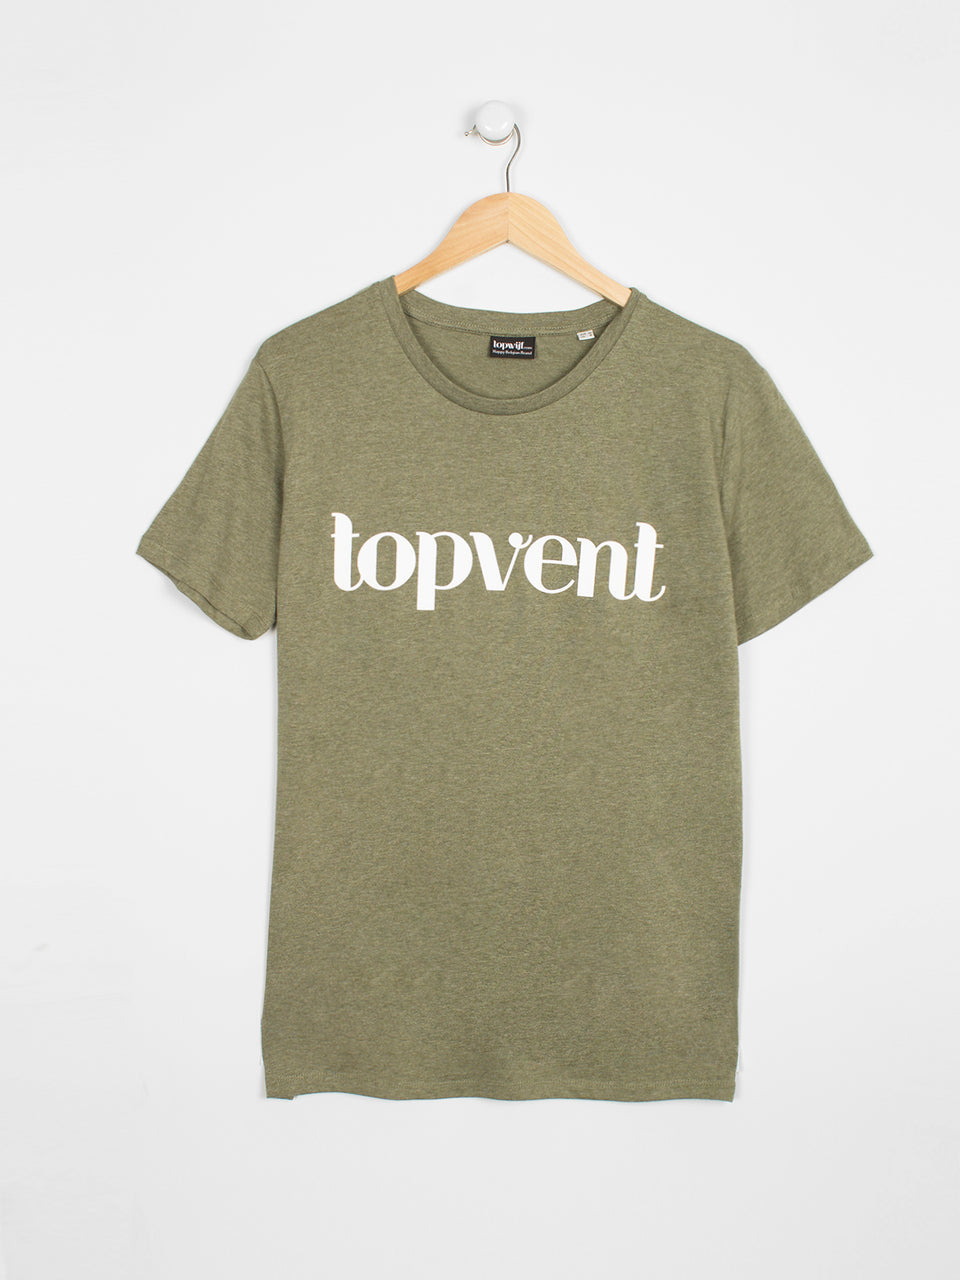 Topvent T-shirt Kaki